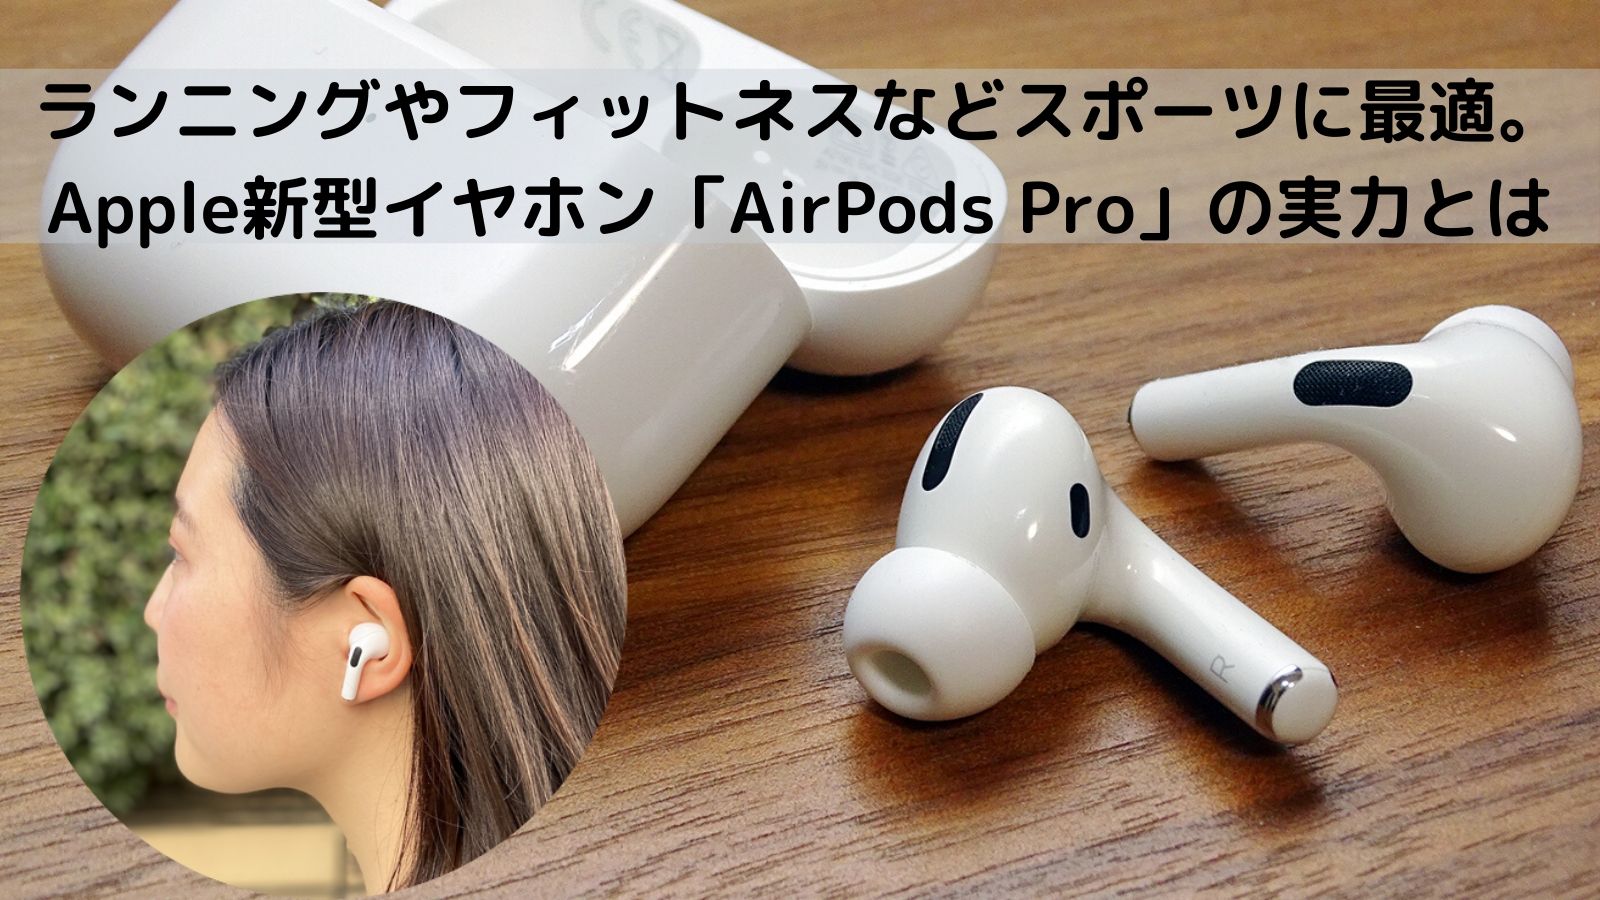 AirPods Pro イヤホン(第一世代)販売について - イヤホン